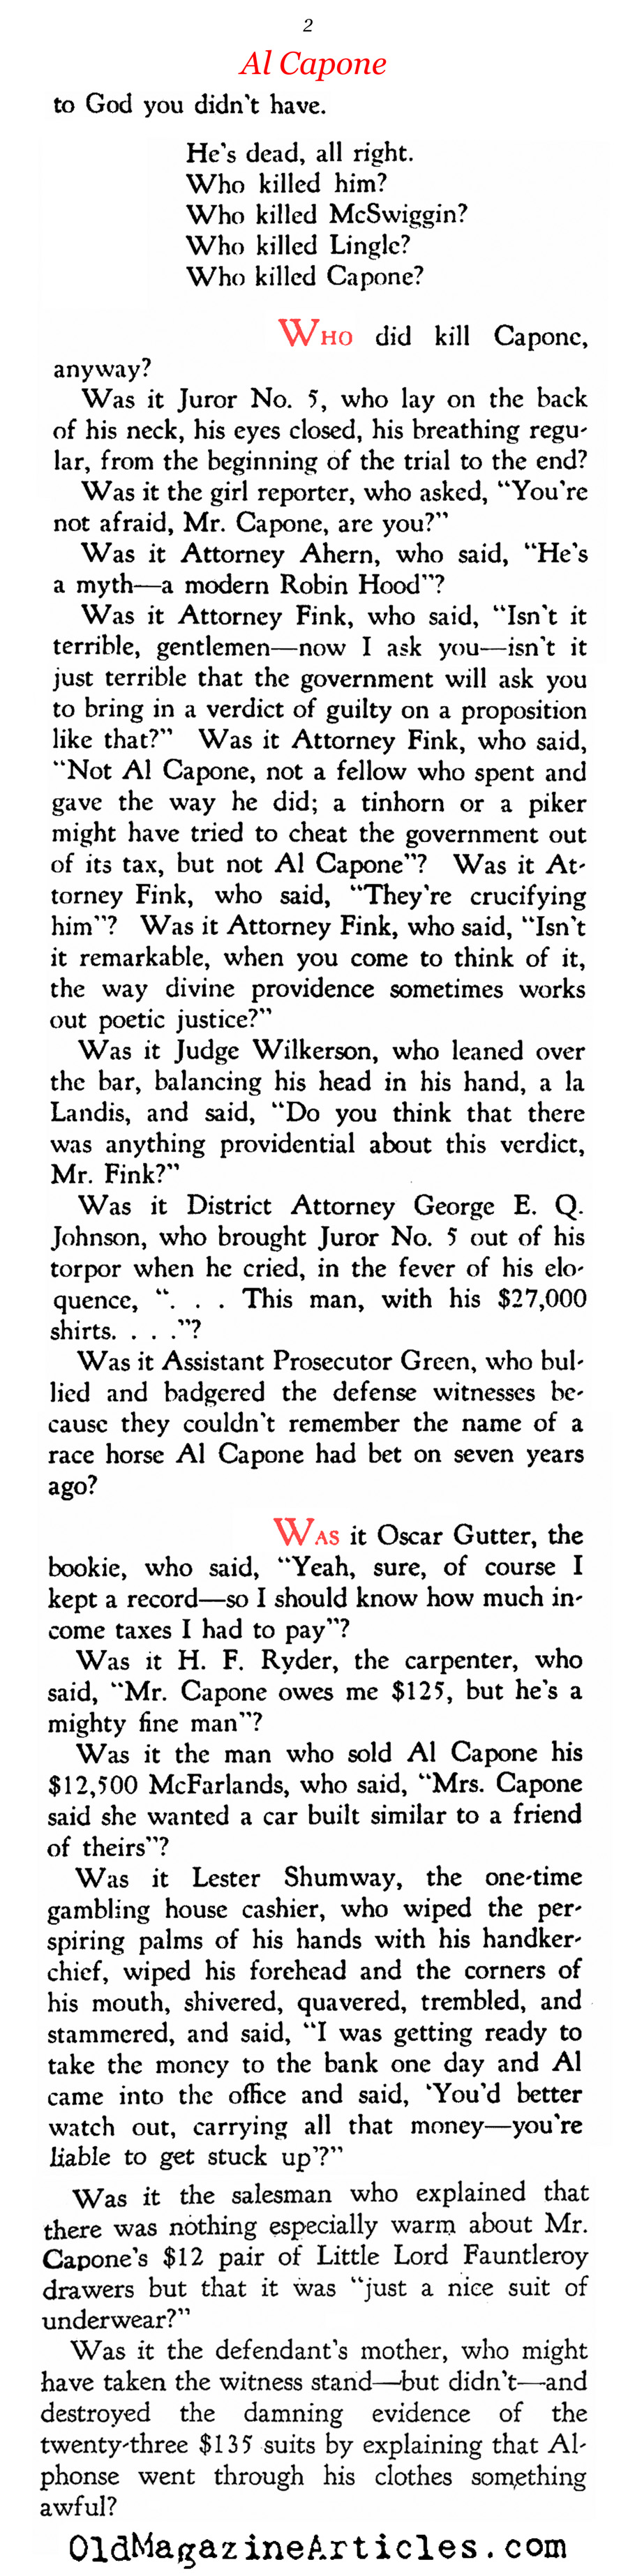 Al Capone: Tax Evader (Chicagoan, 1931)